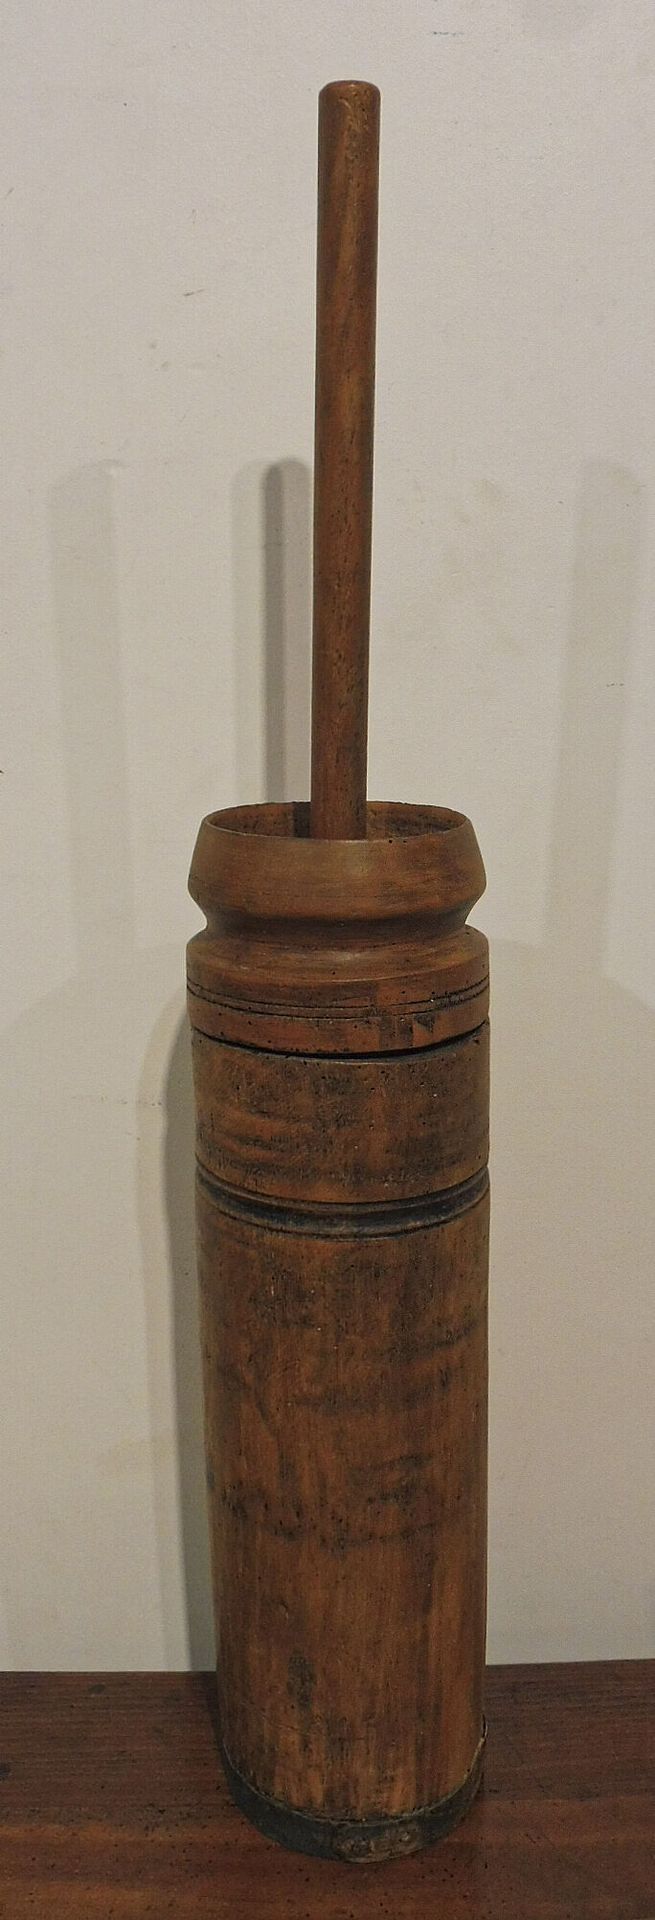 Null Baratte à beurre en bois, cerclage métallique à la base
H. 78 cm

Piqûres